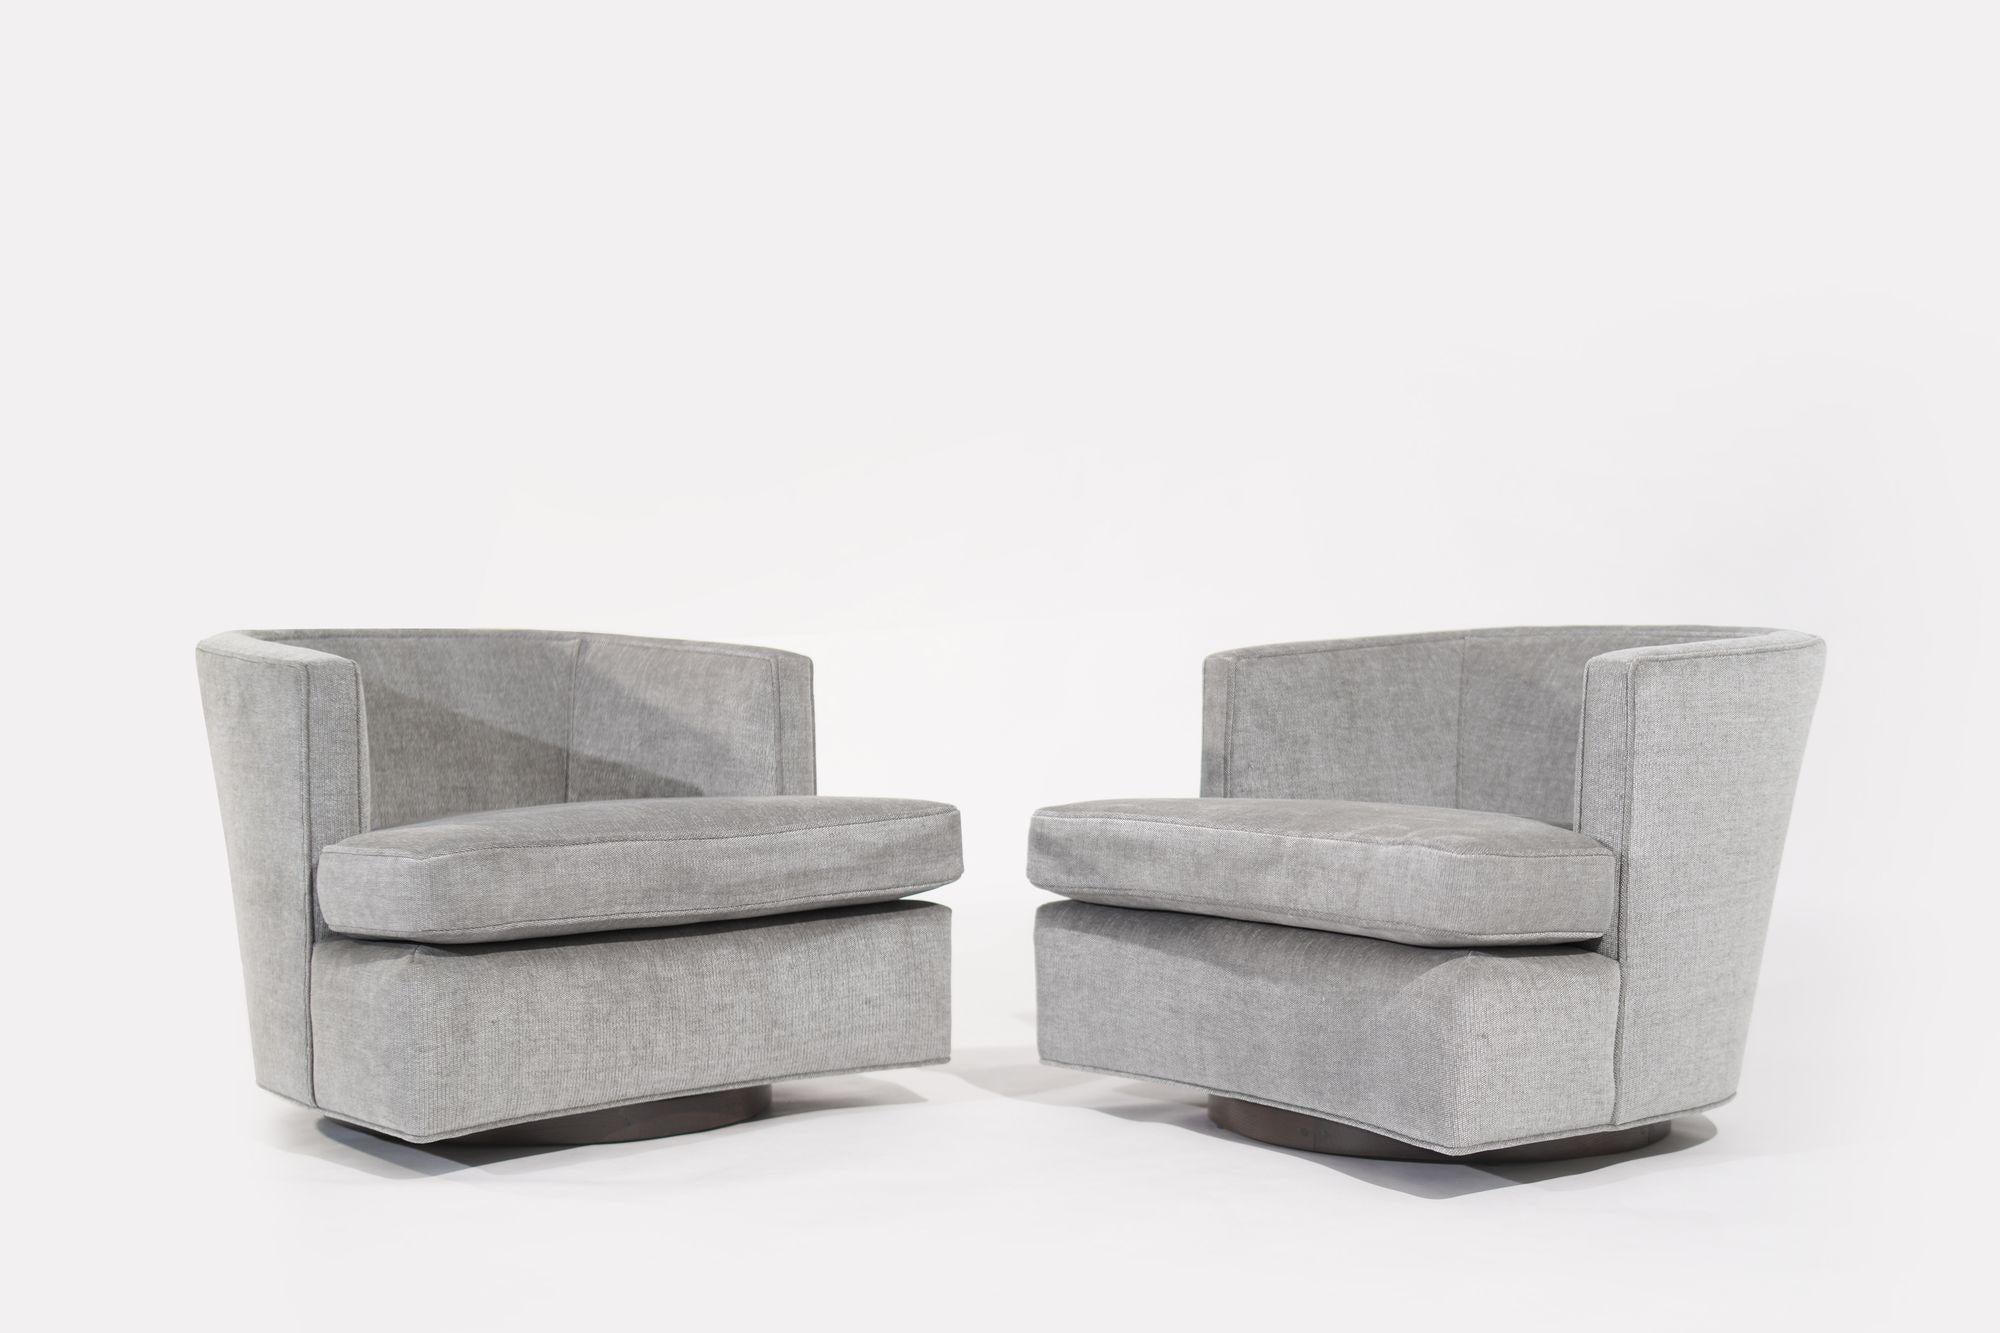 Une paire de chaises pivotantes intemporelles, conçues par l'emblématique Harvey Probber dans les années 1950 et ramenées à la vie par Stamford Modern grâce à un processus de restauration complet. Ces chaises représentent l'incarnation de la